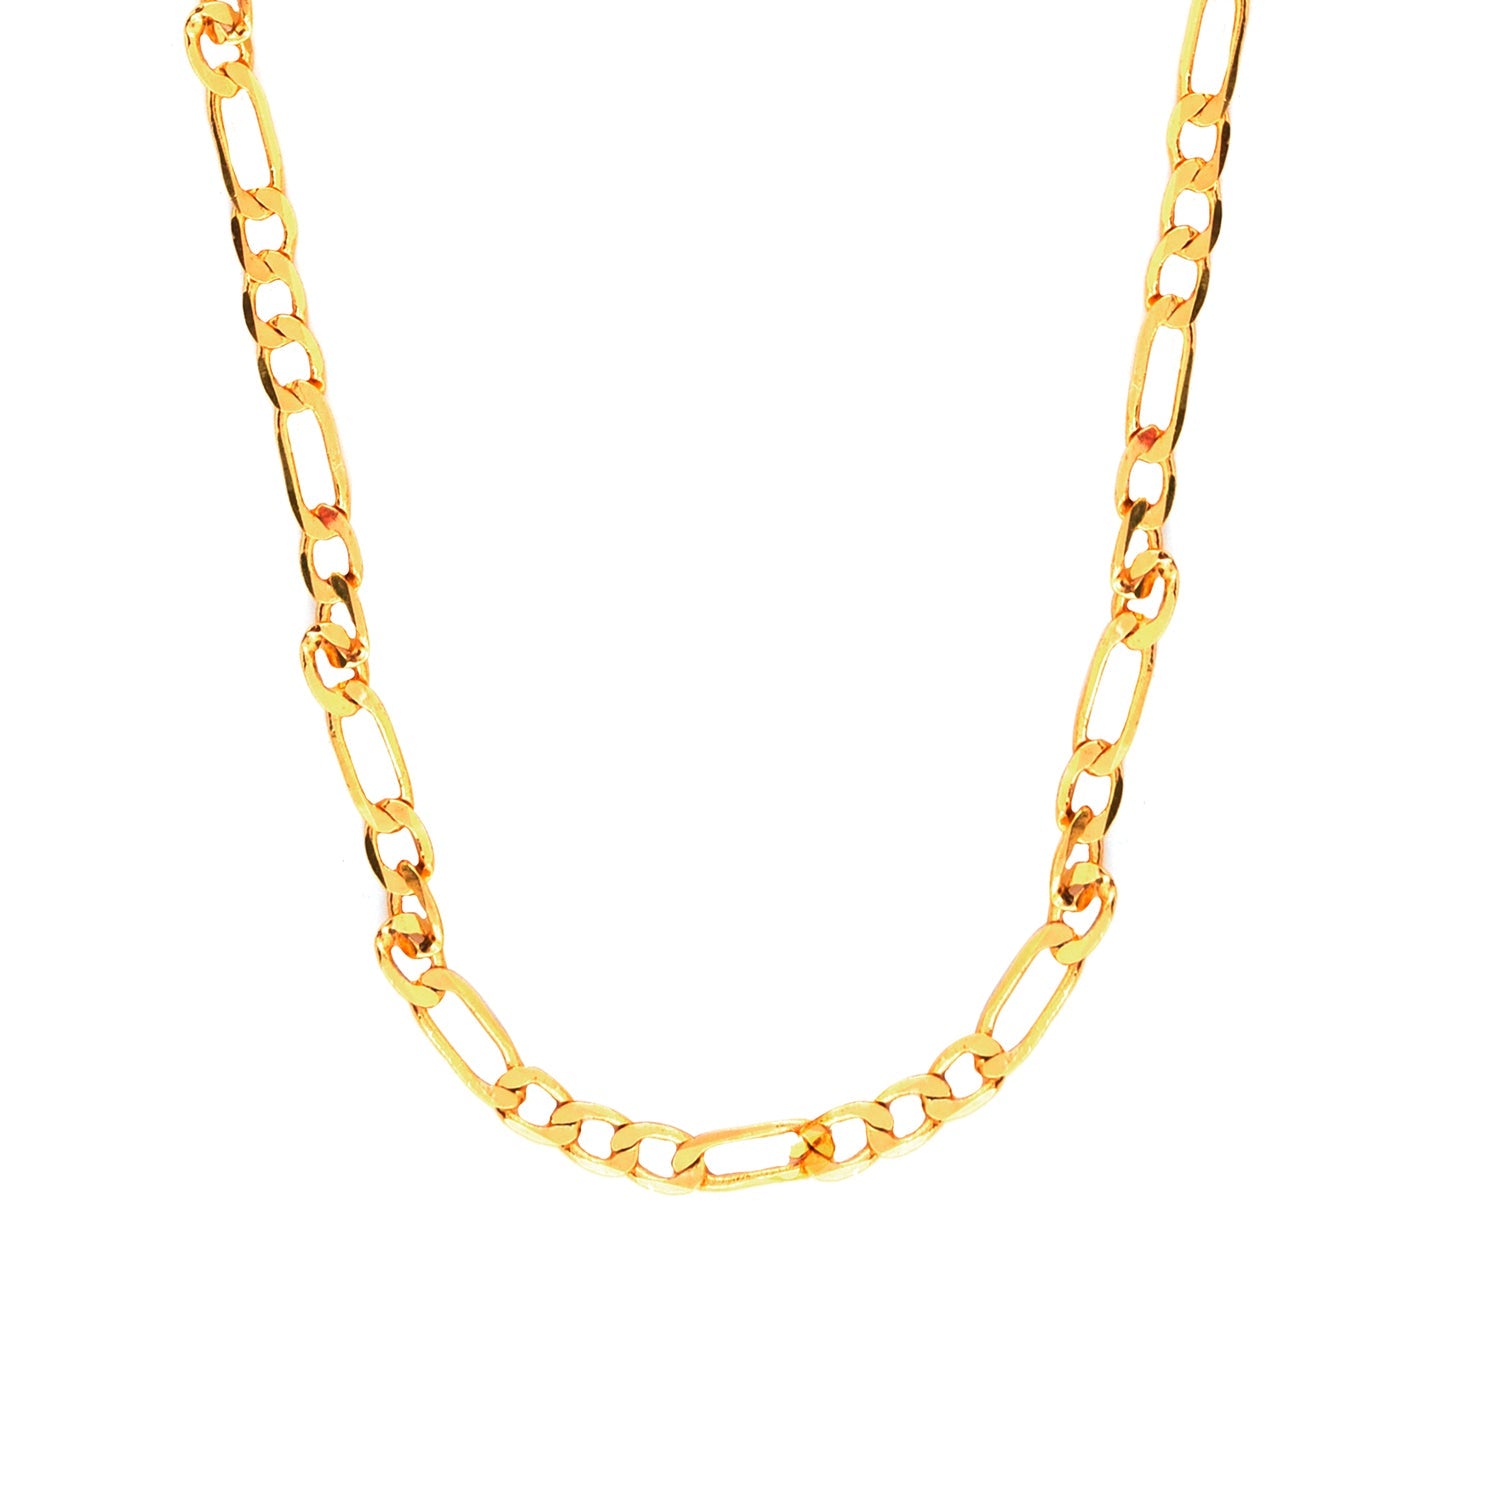 Buy Online Cricket Player Celebrity Sachin Tendulkar Inspired Gold Plated  Figaro Chain | jewellery for men | menjewell.com